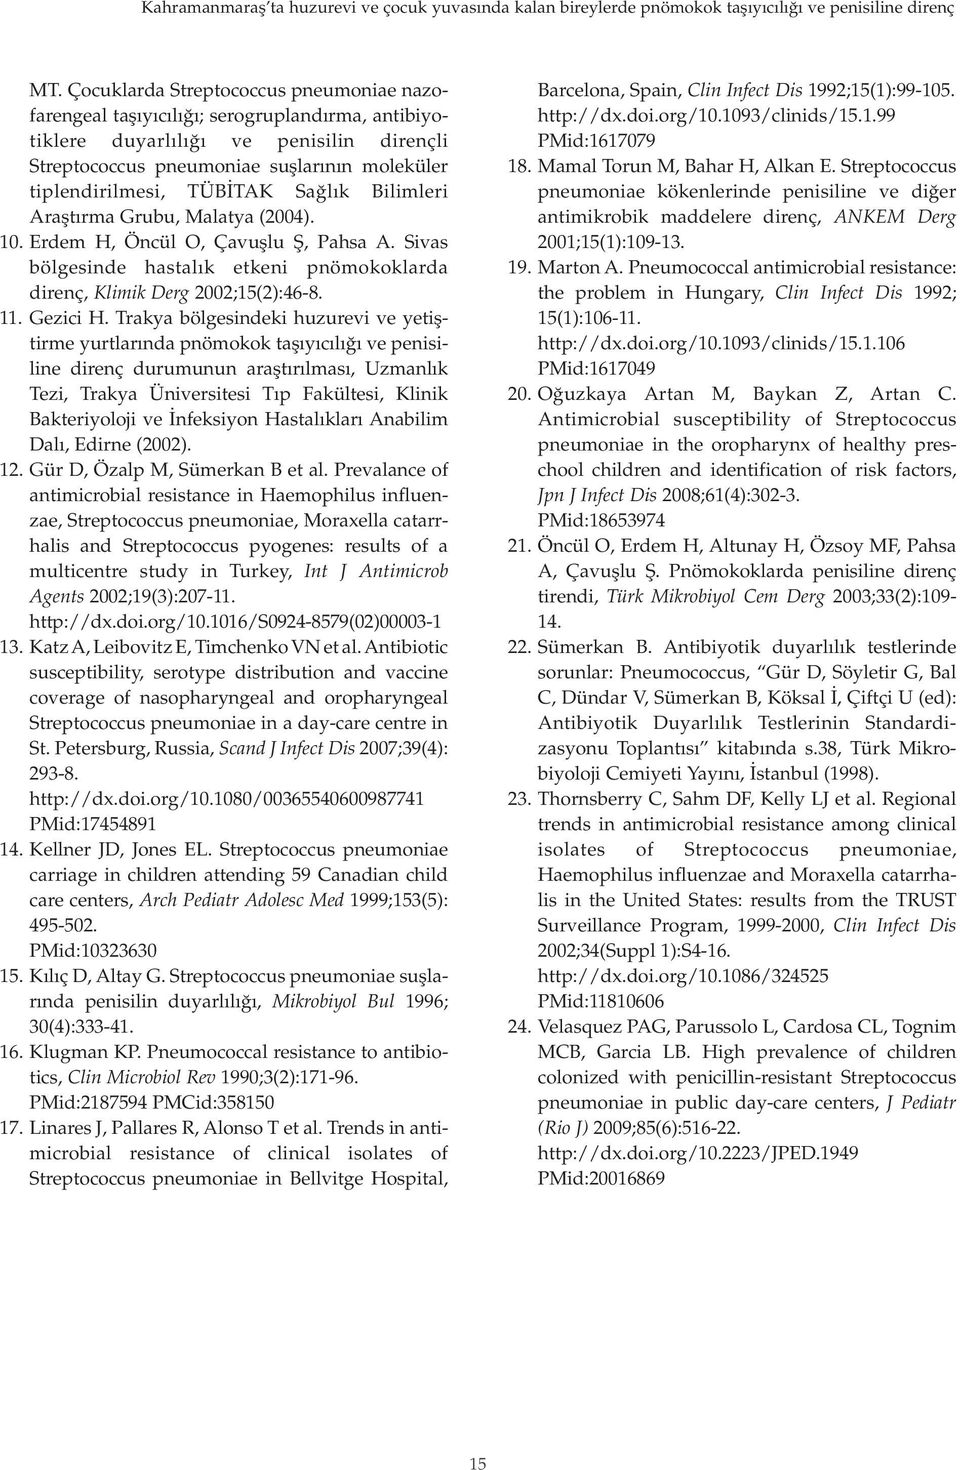 Bilimleri Araştırma Grubu, Malatya (2004). 10. Erdem H, Öcül O, Çavuşlu Ş, Pahsa A. Sivas bölgeside hastalık etkei pömokoklarda direç, Klimik Derg 2002;15(2):46-8. 11. Gezici H.